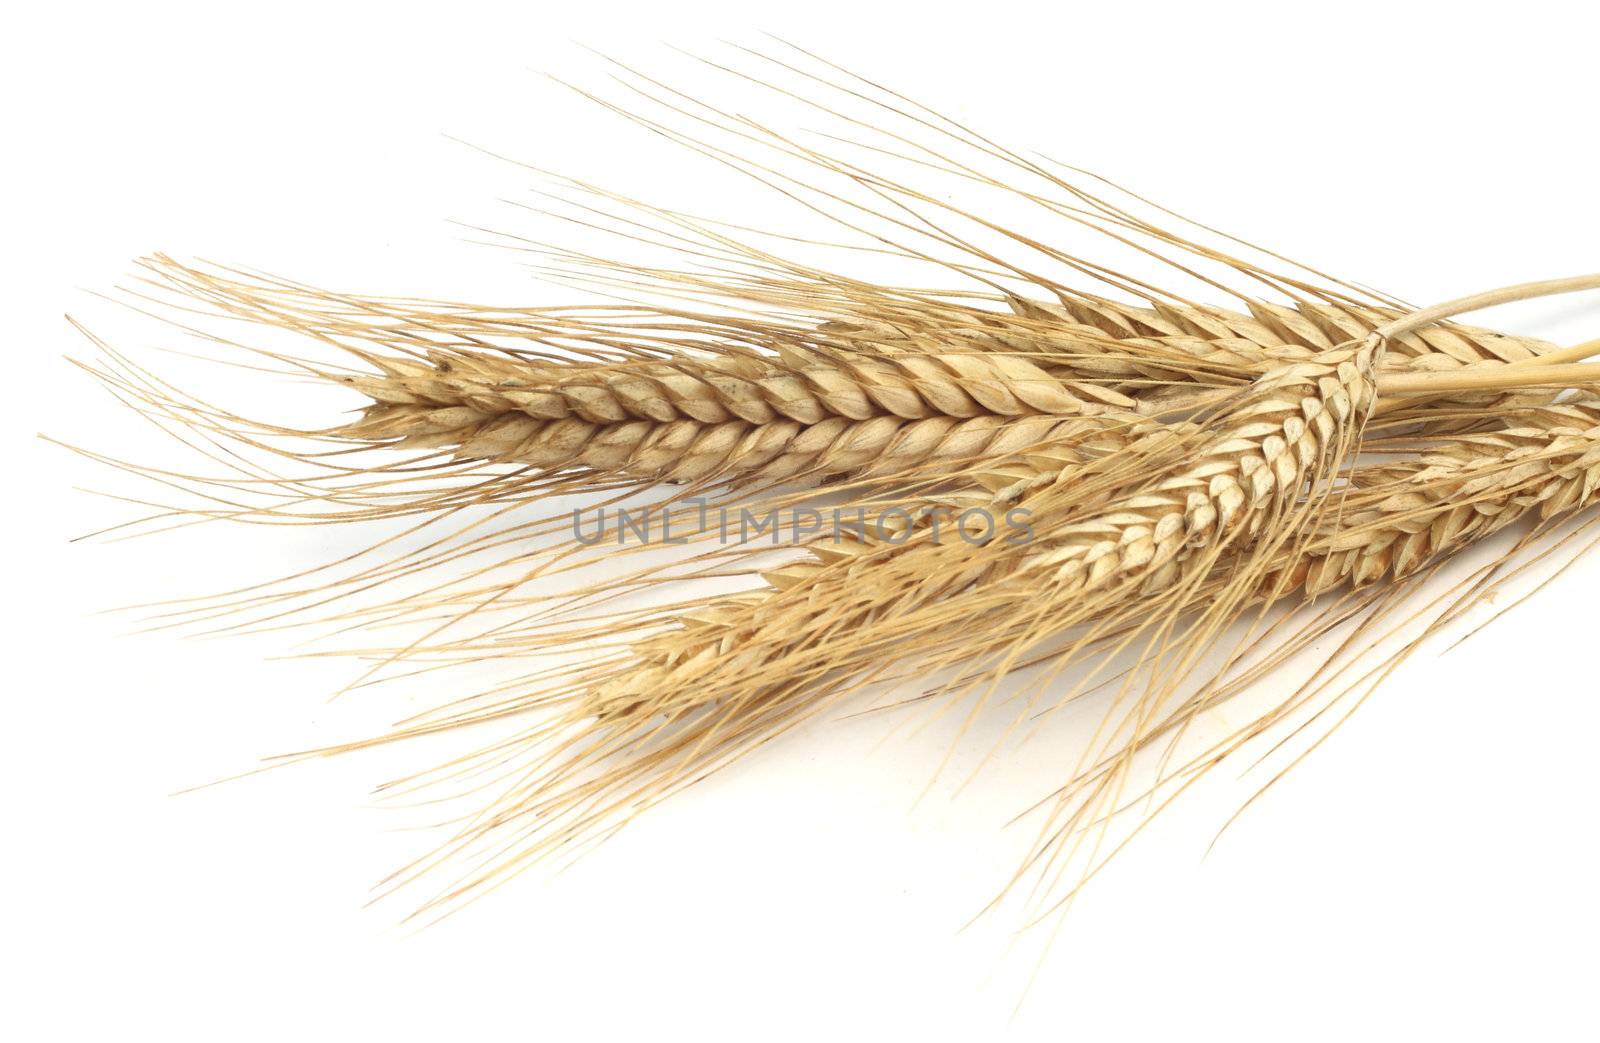 Wheat ears by destillat